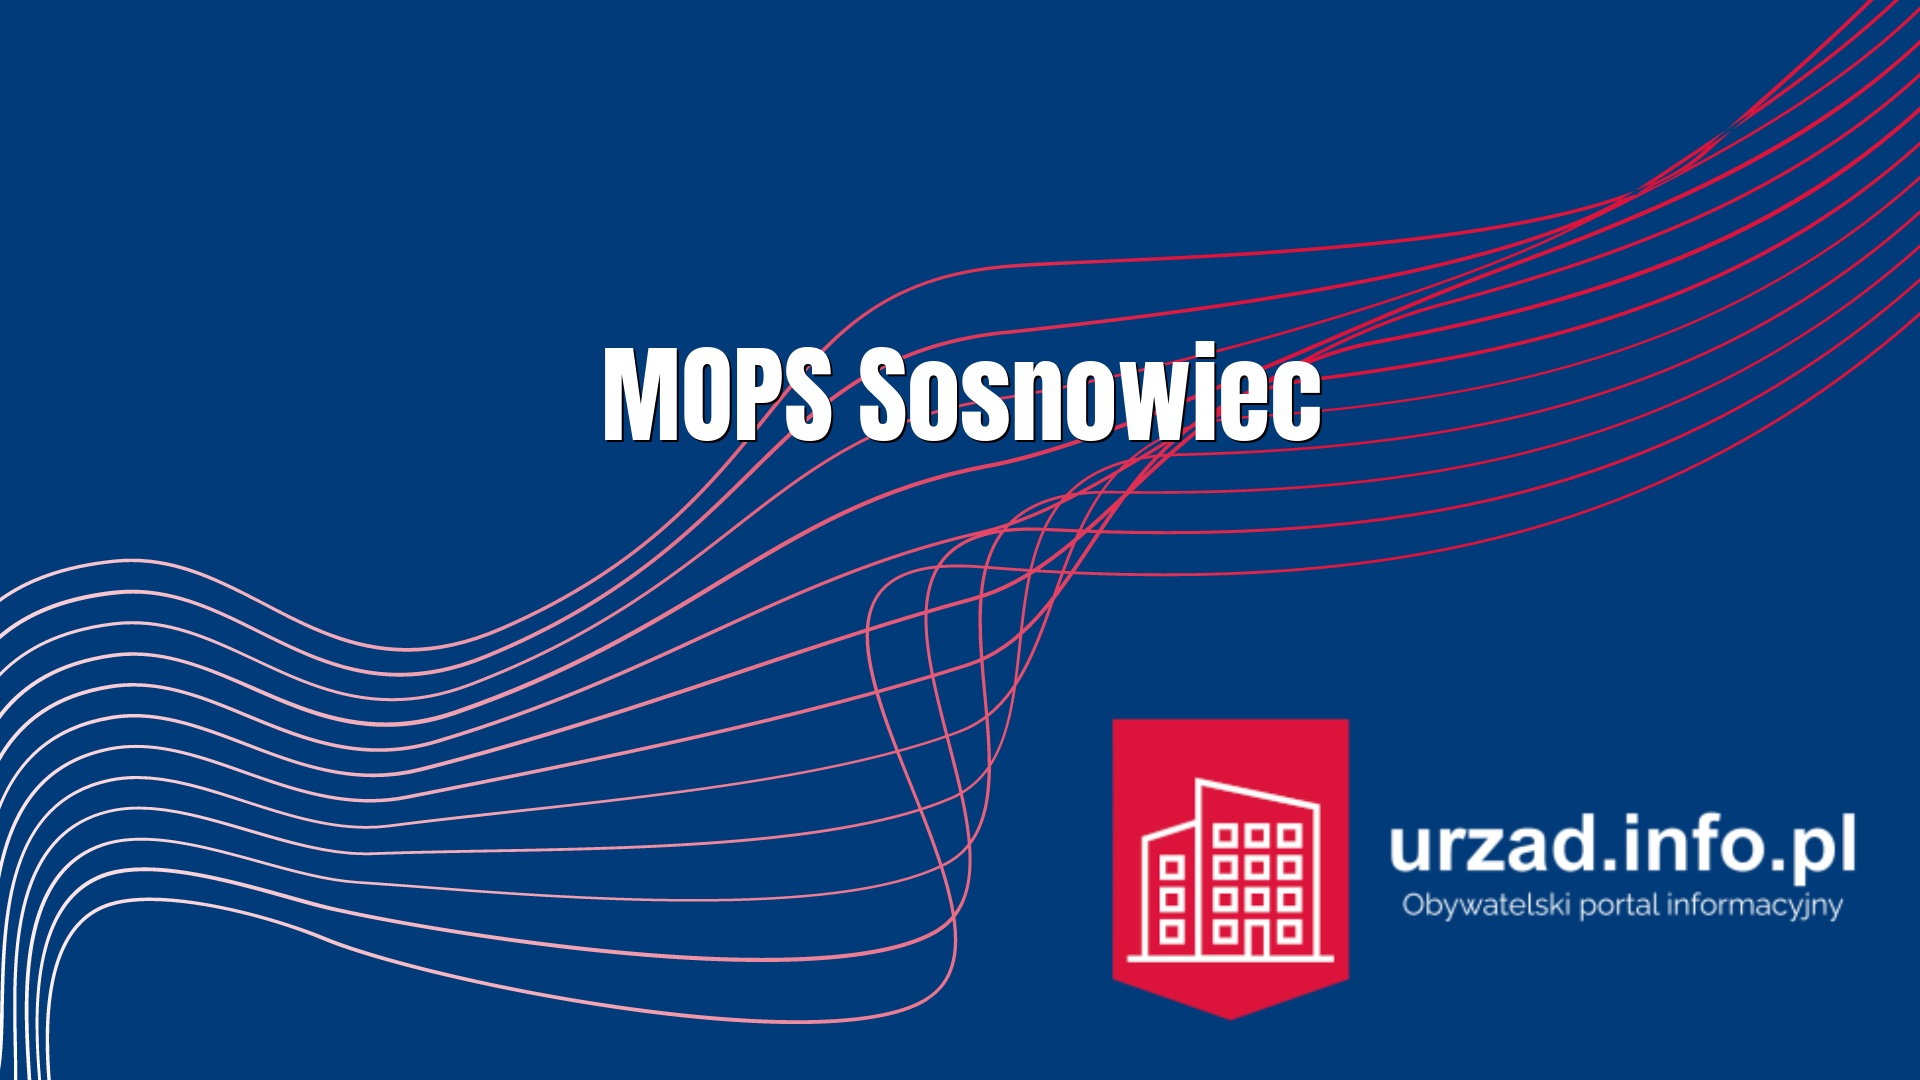 MOPS Sosnowiec - Miejski Ośrodek Pomocy Społecznej w Sosnowcu